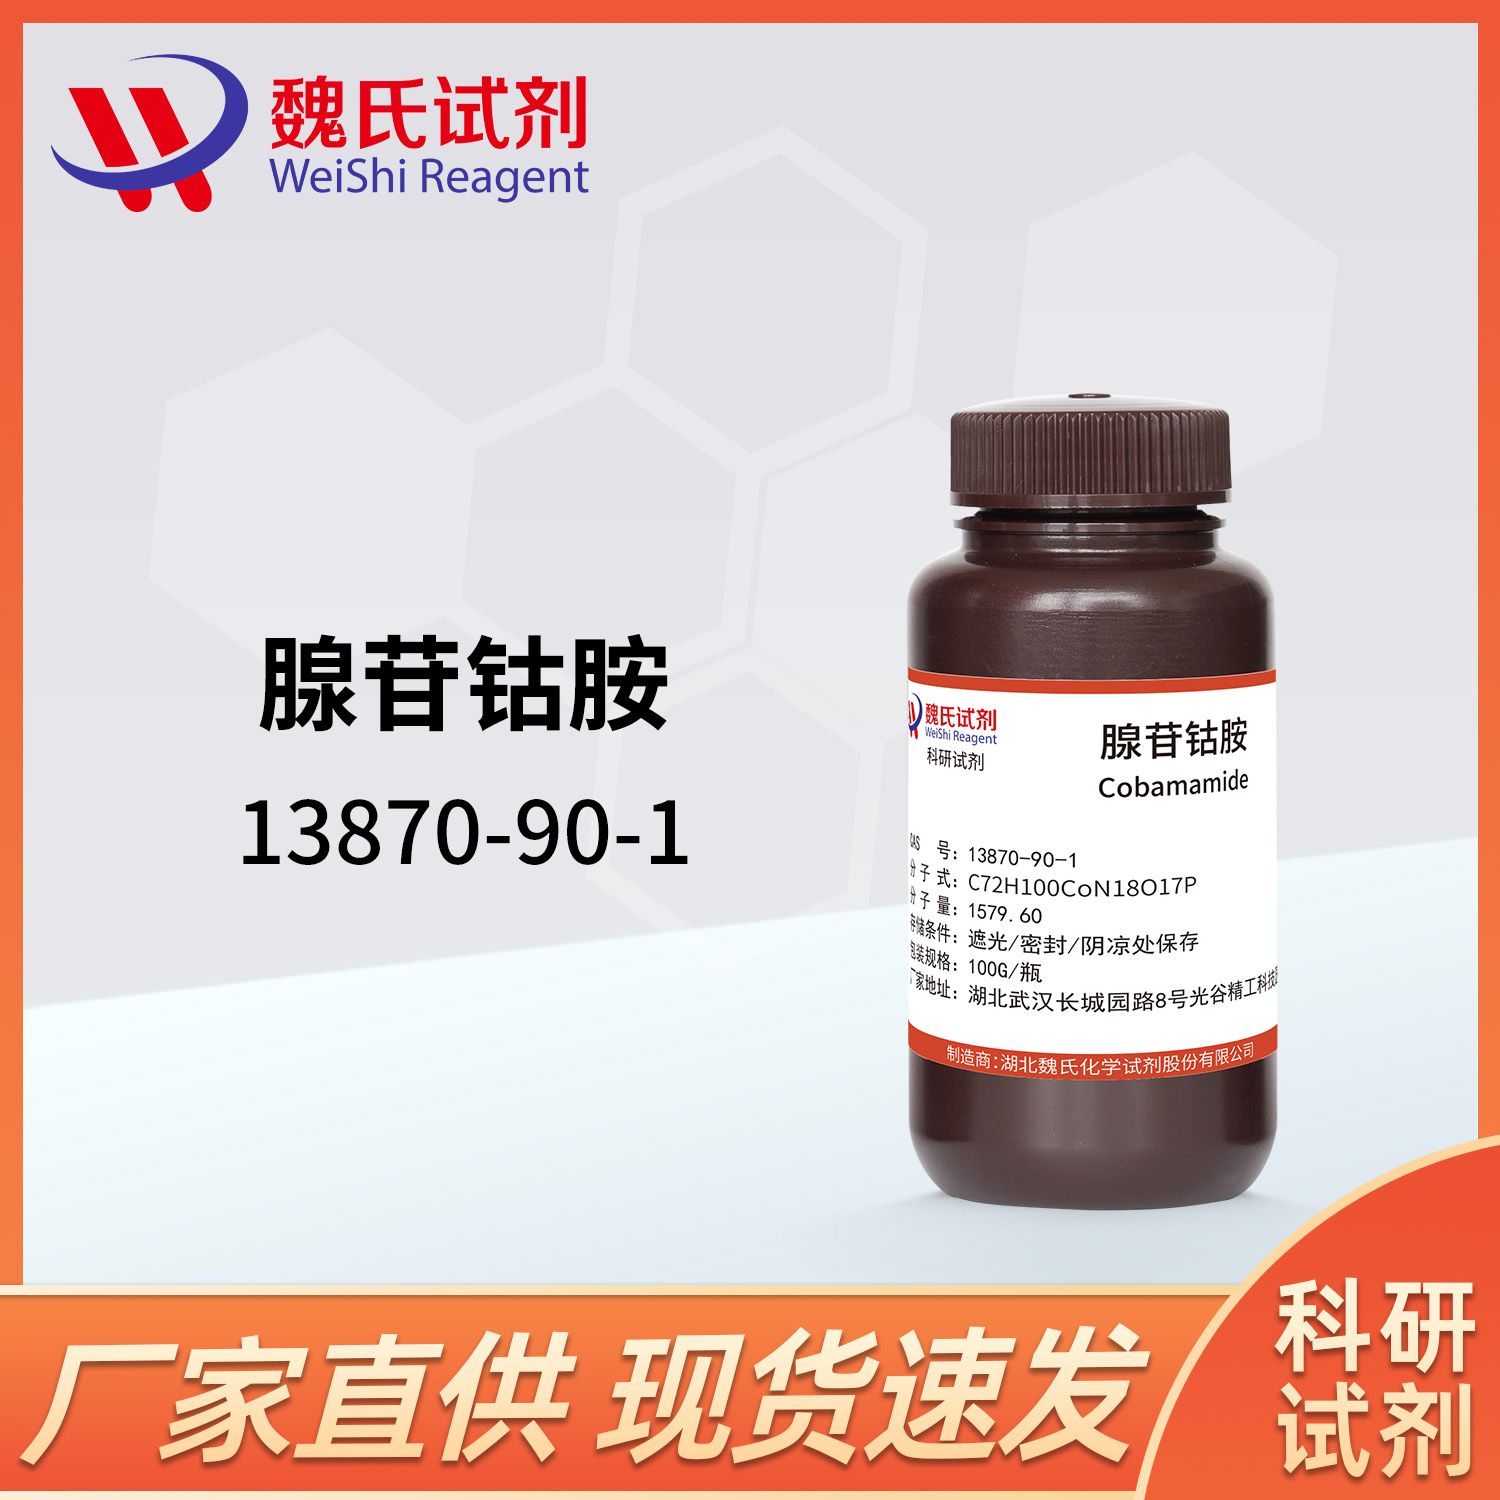 腺苷钴胺/13870-90-1/Cobamamide